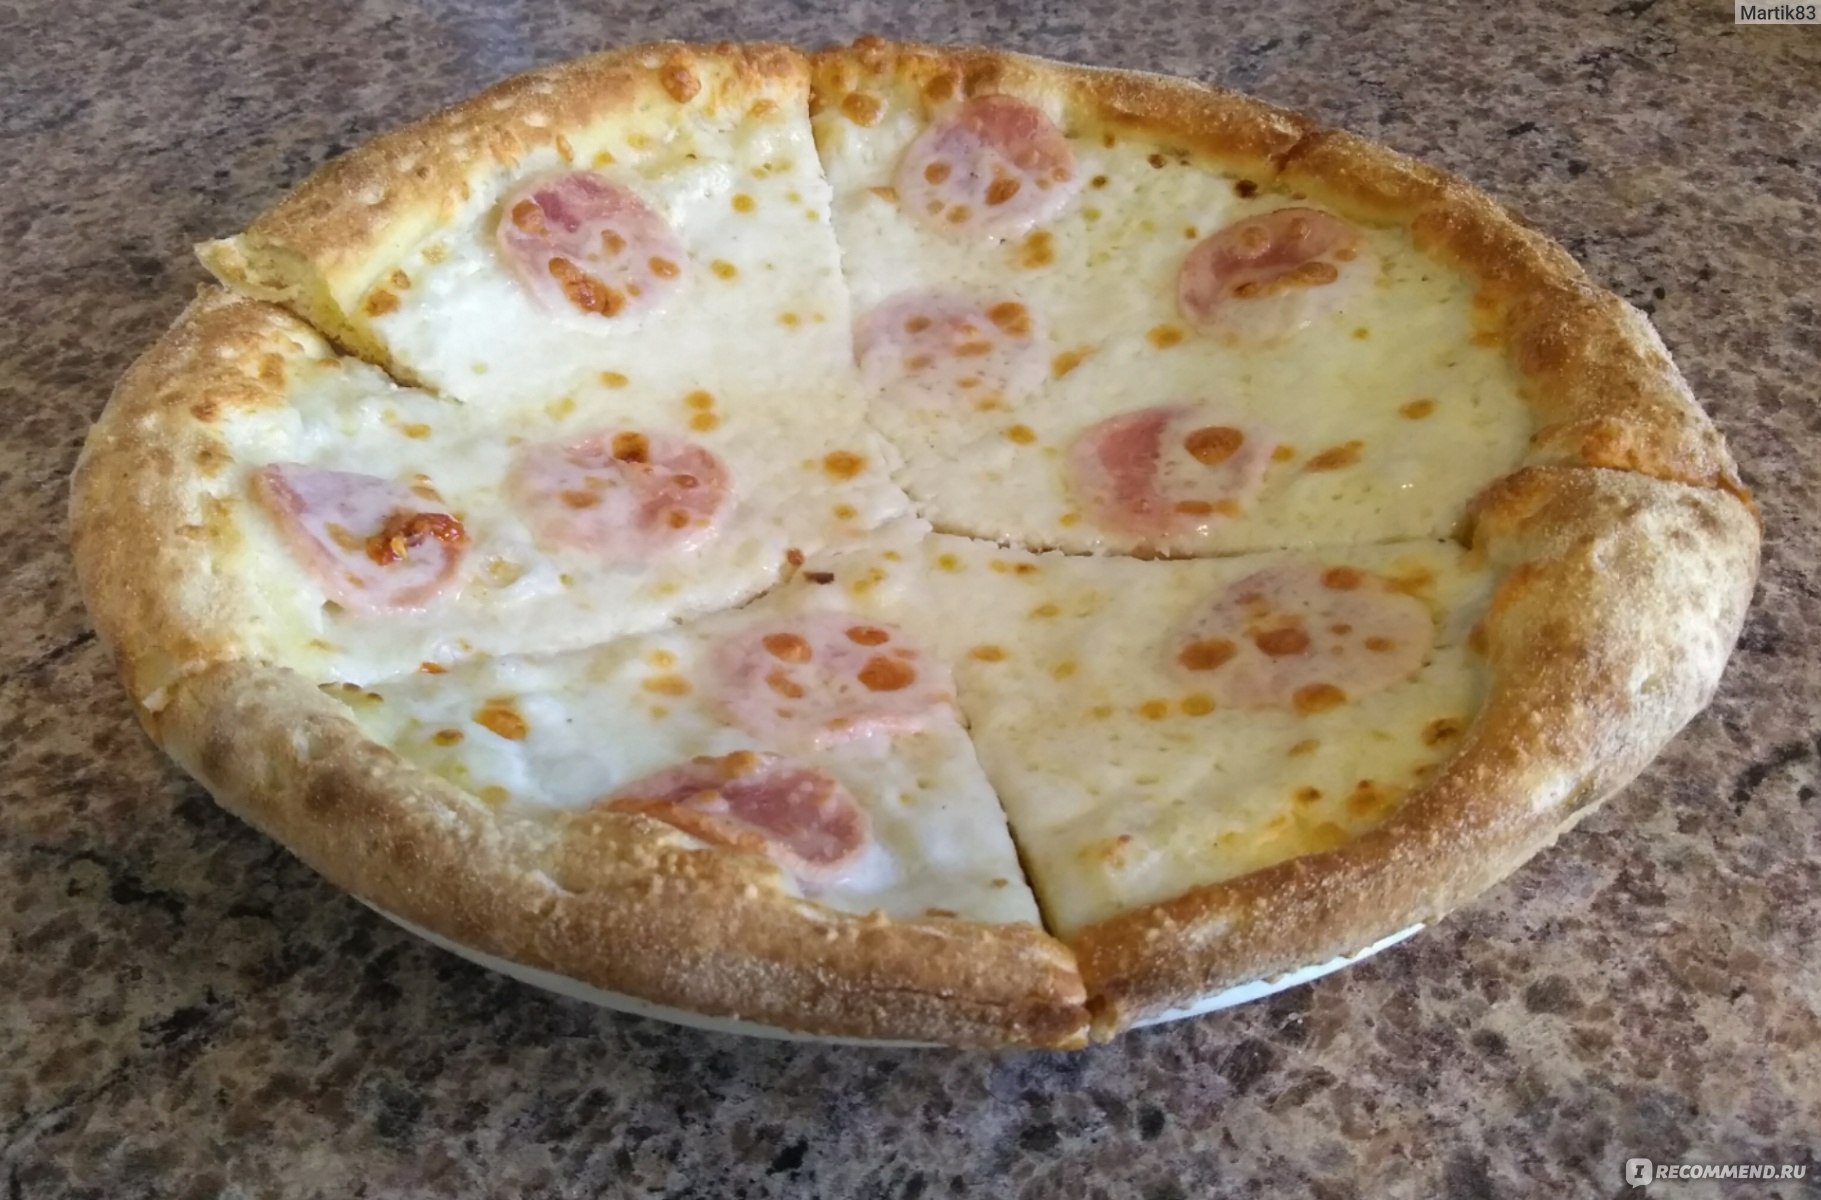 додо пицца соус сырный фото 106